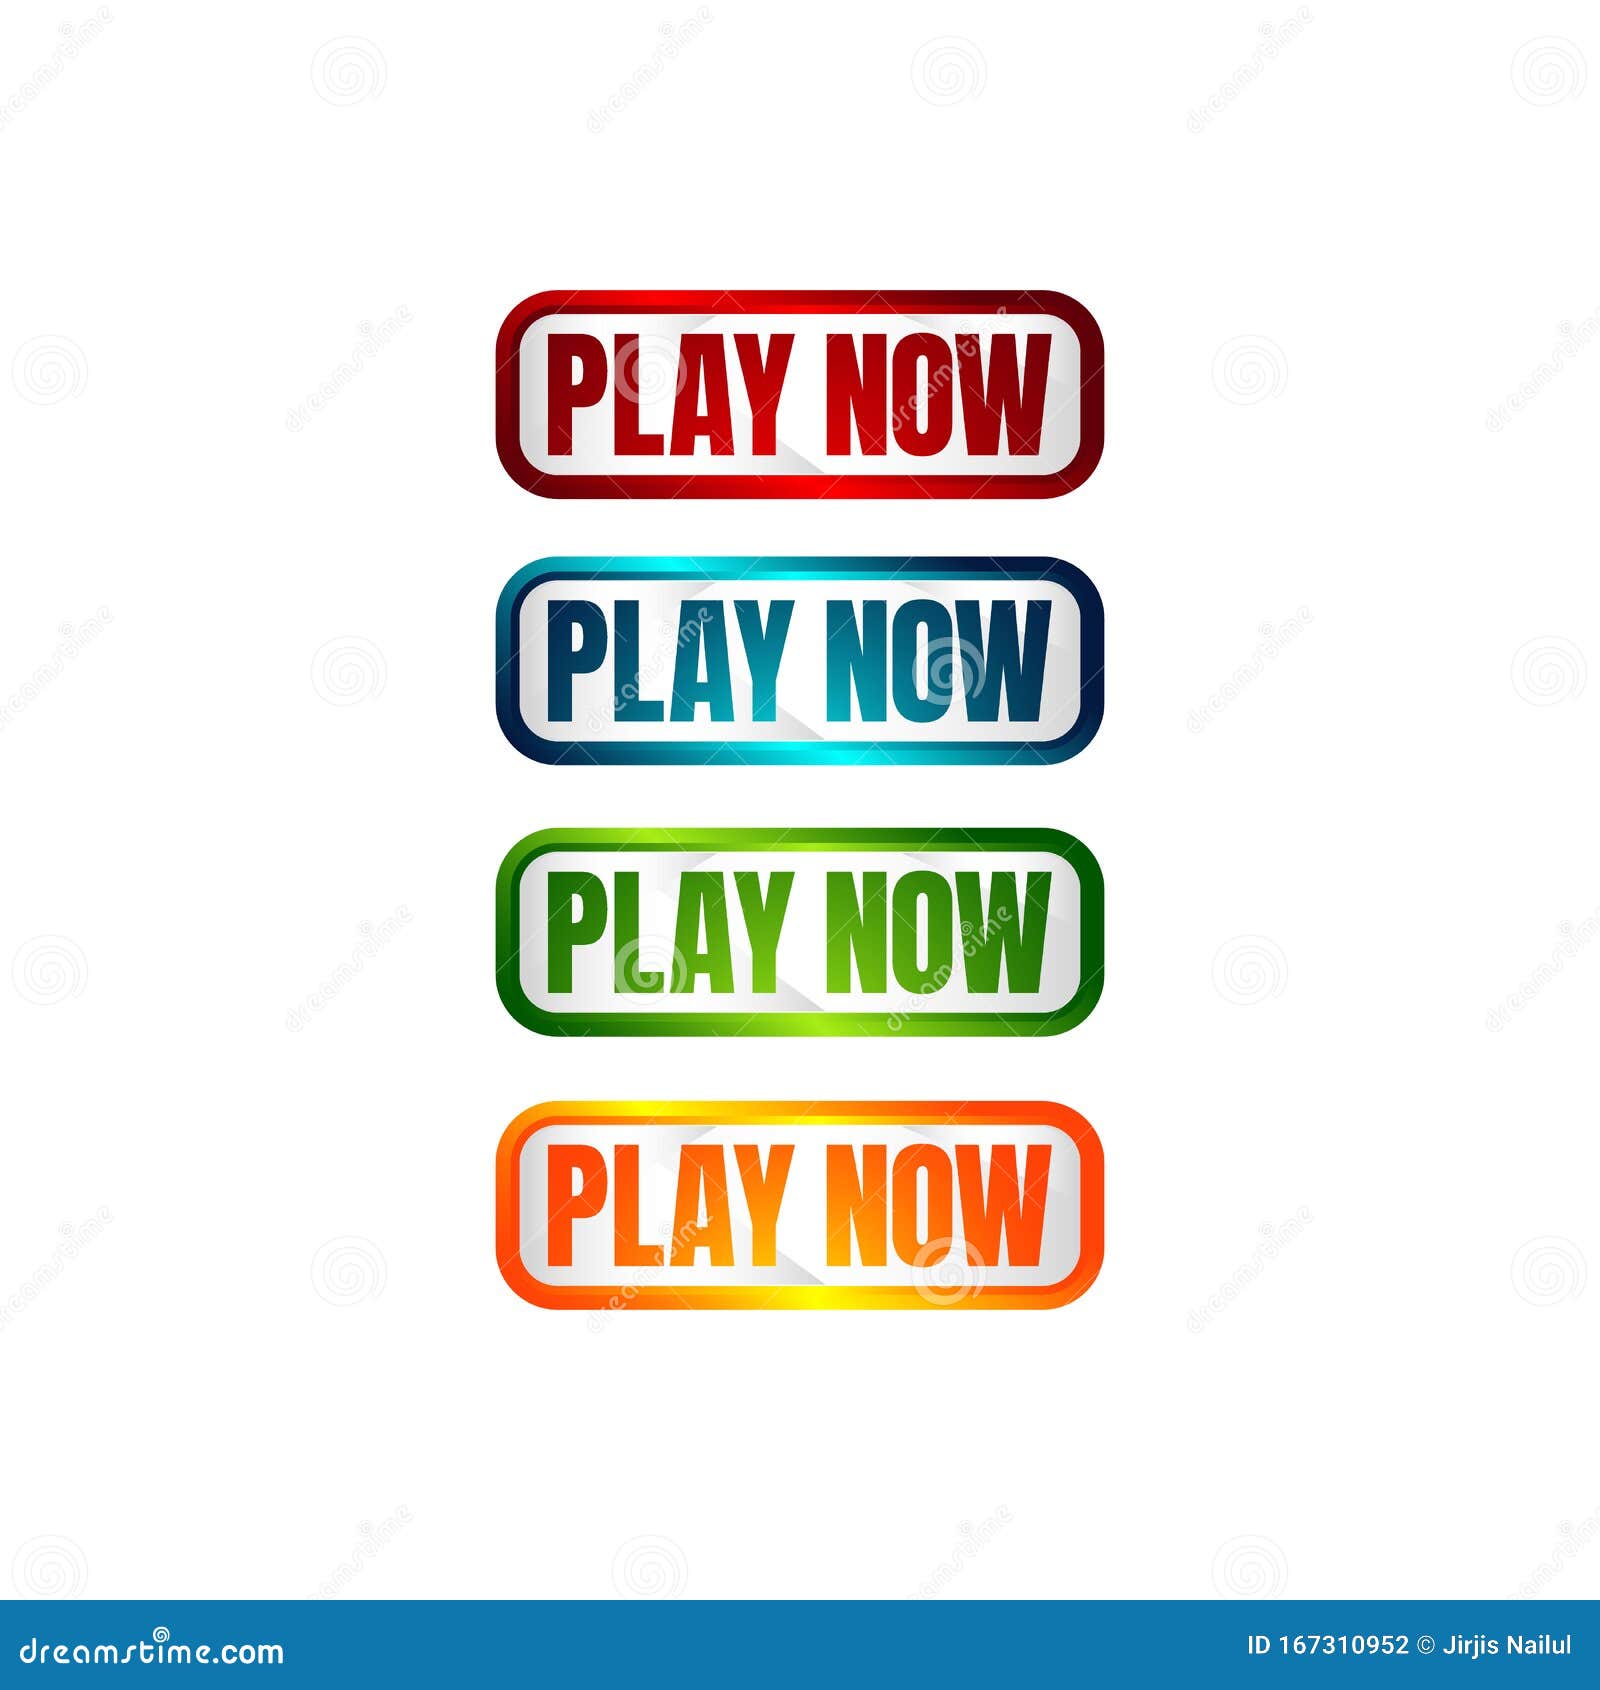 Play now button Stock Vector